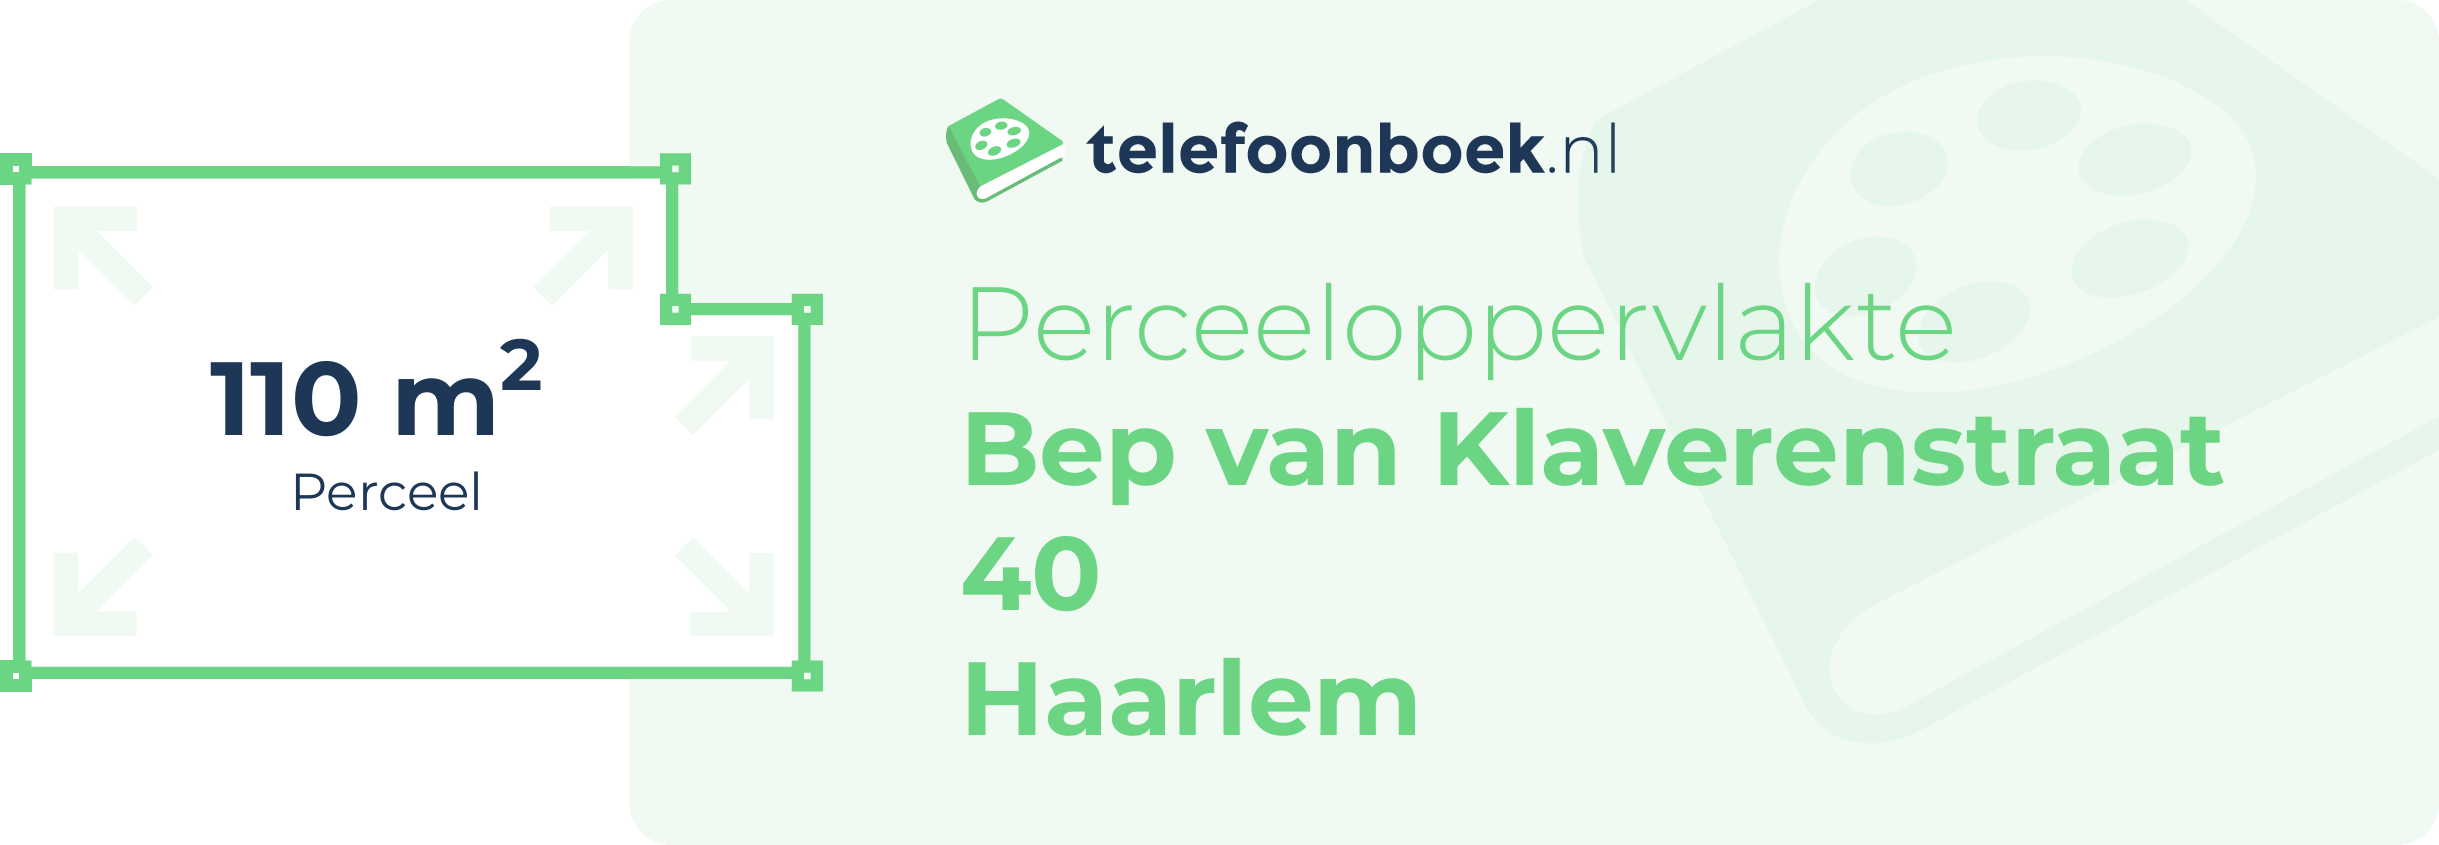 Perceeloppervlakte Bep Van Klaverenstraat 40 Haarlem